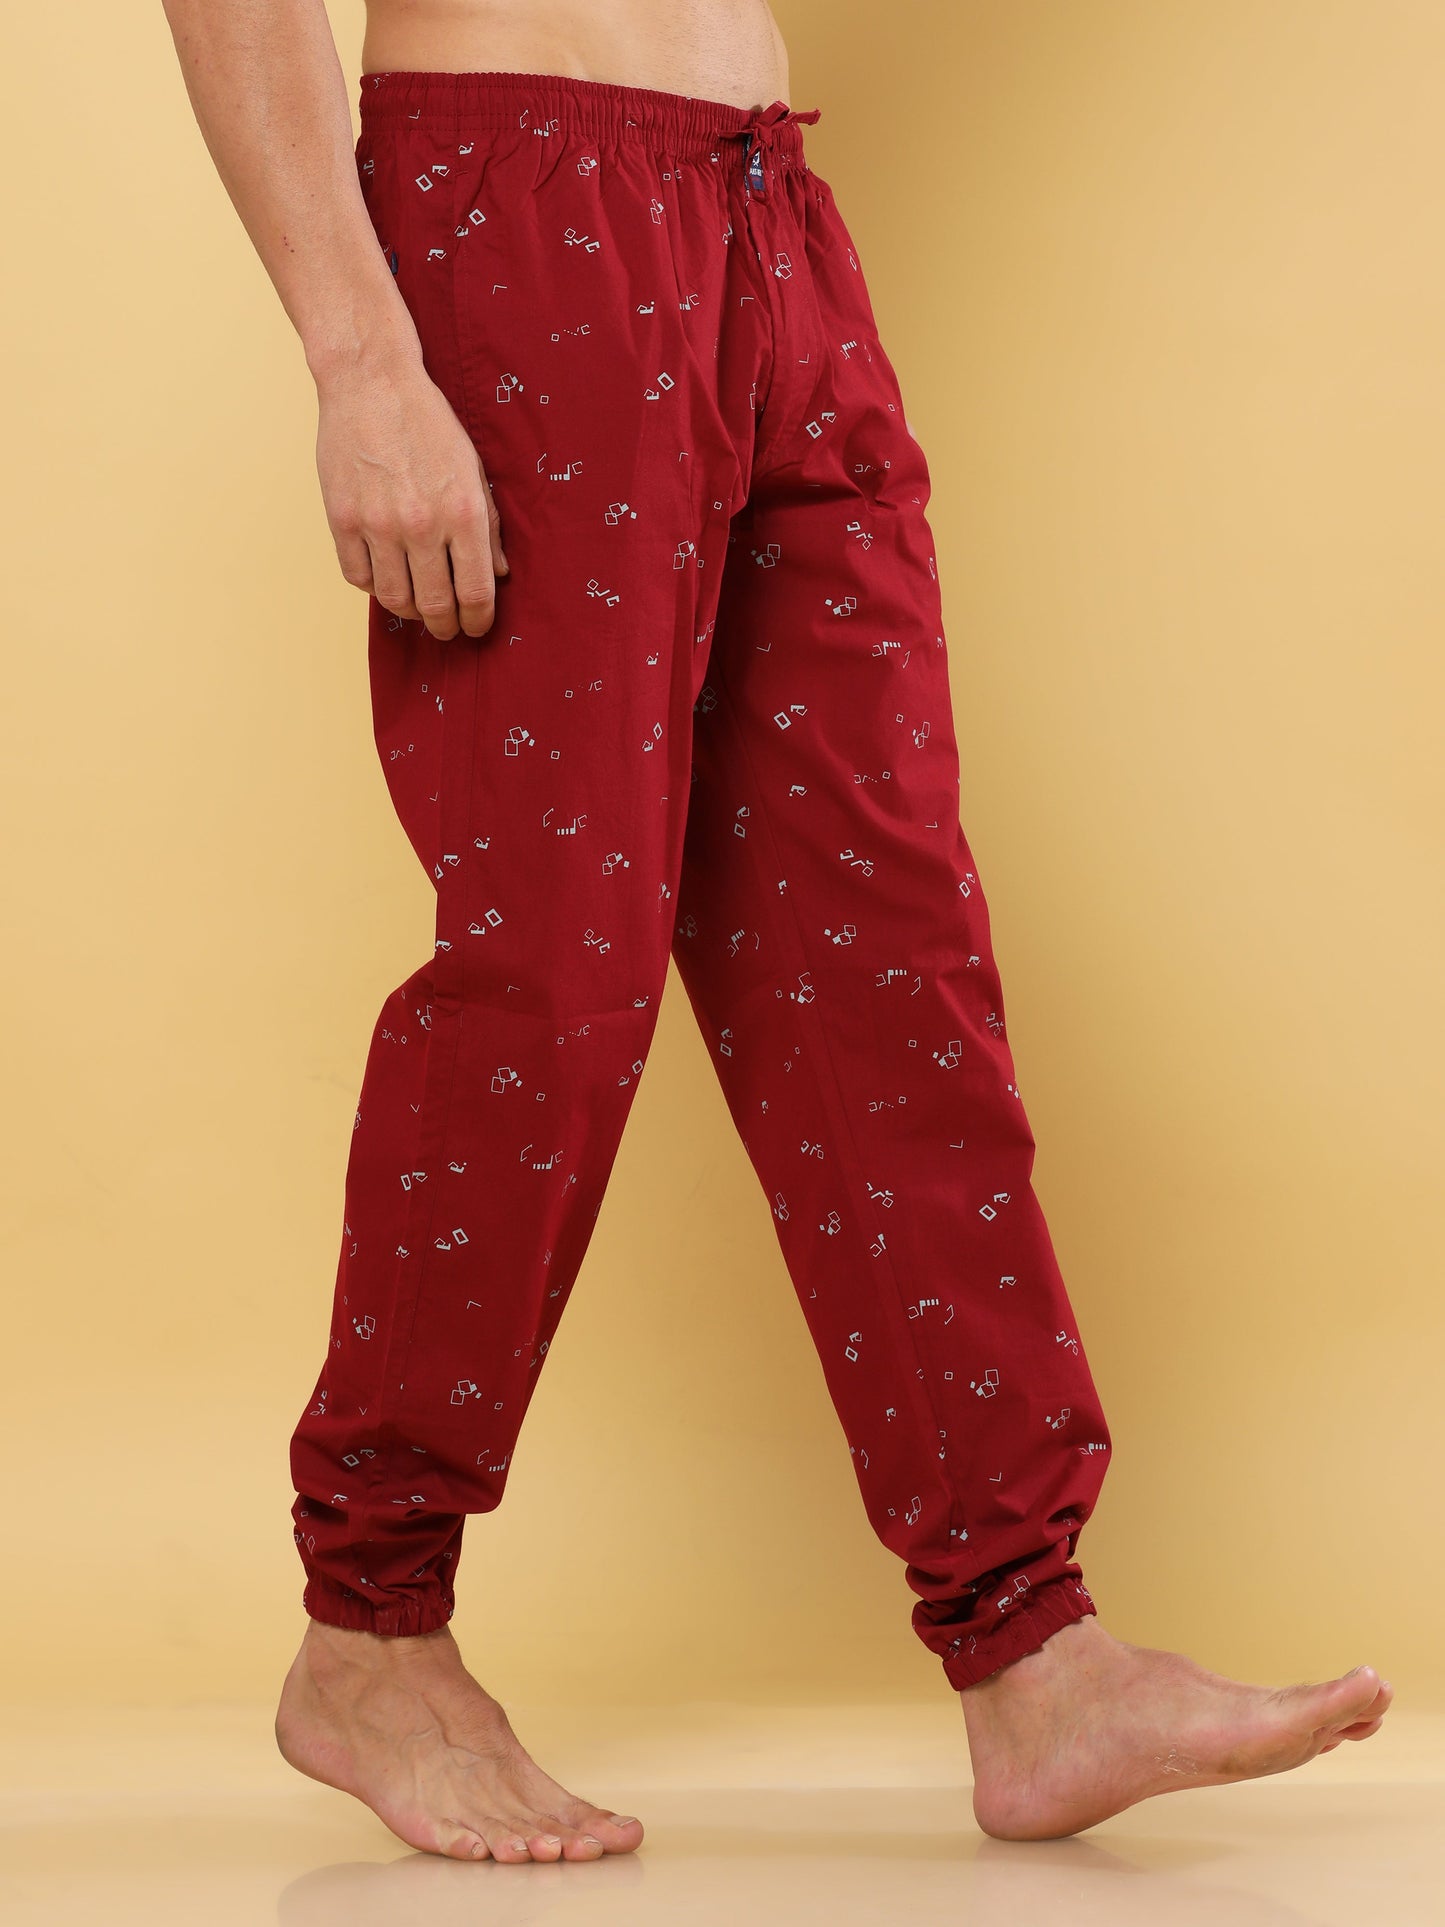 Red Devil Pyjama